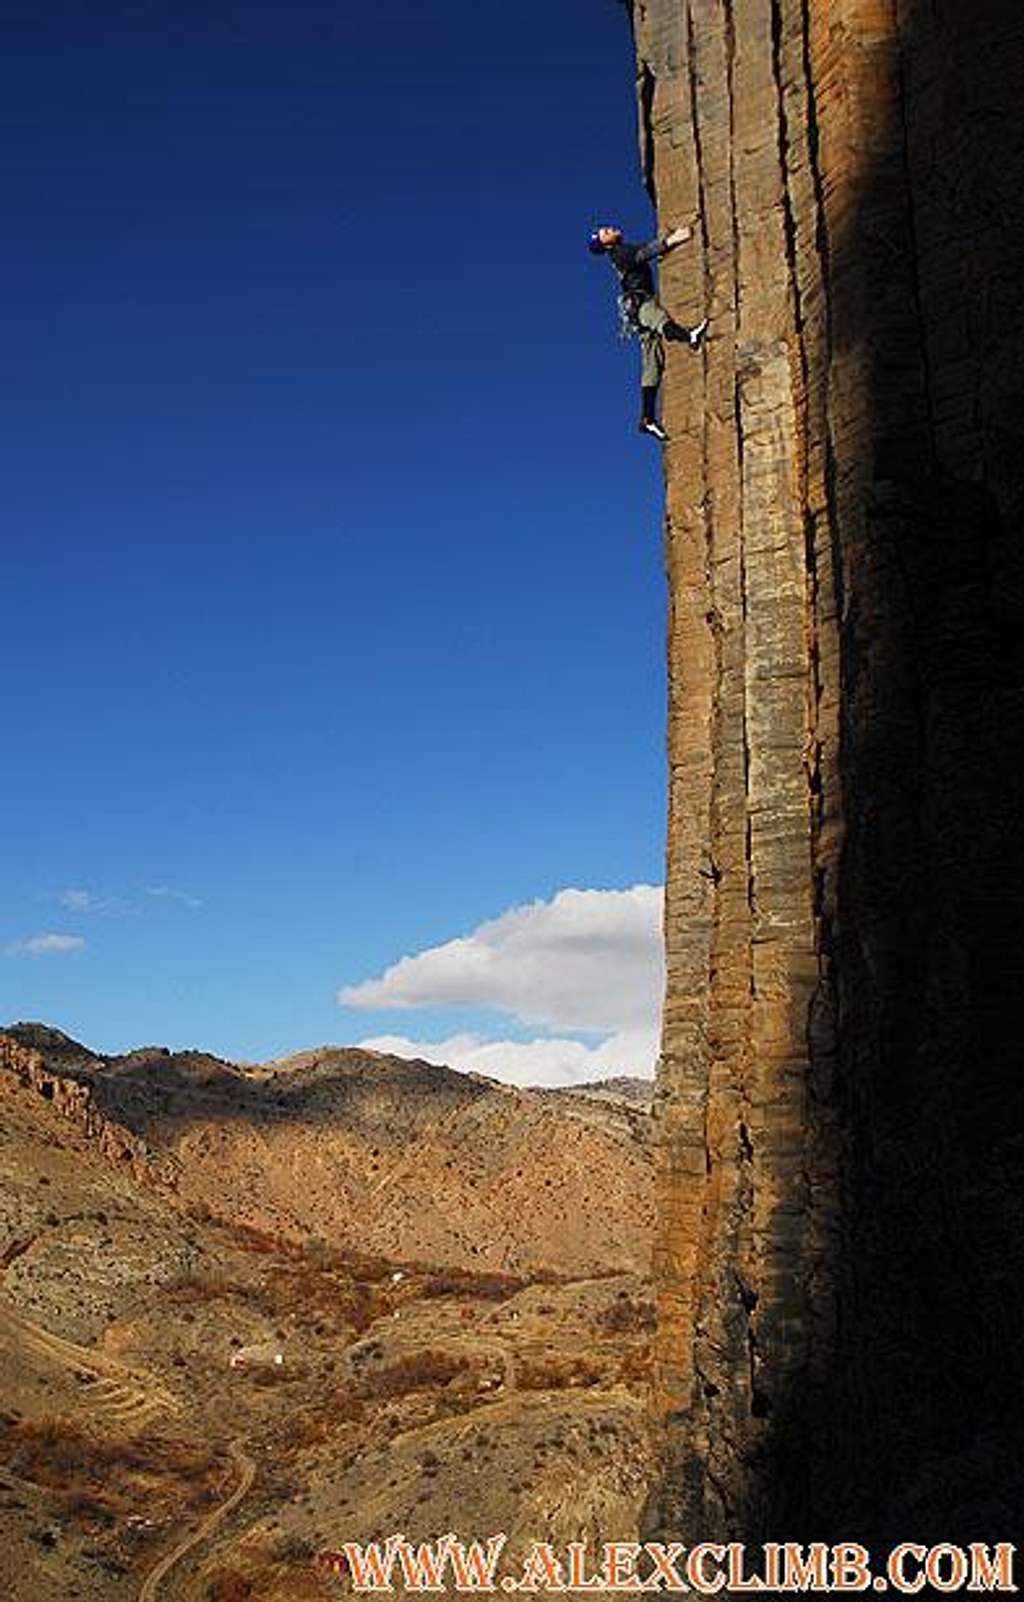 Rockclimbing in Armenia